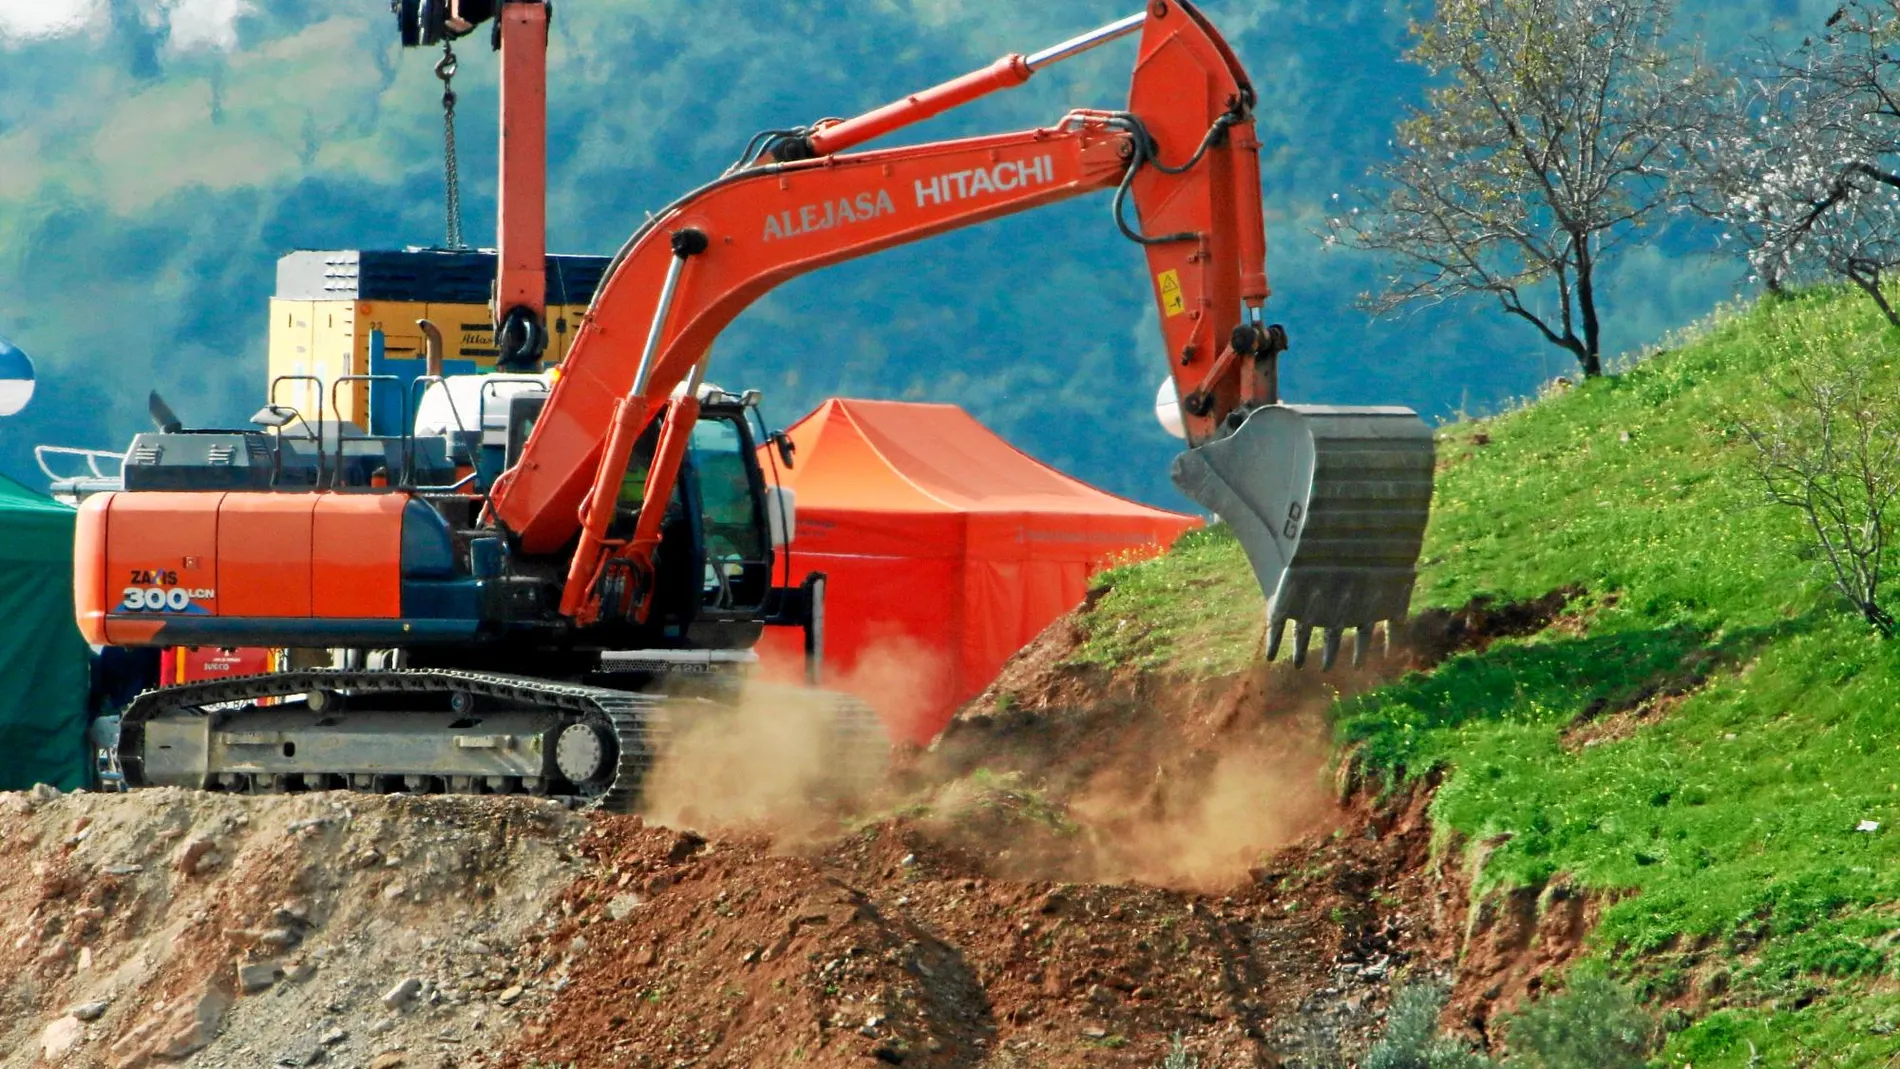 Una de las excavadoras trabaja para preparar el terreno y que máquinas más pesadas puedan acceder al lugar / Foto: Lorenzo Carnero